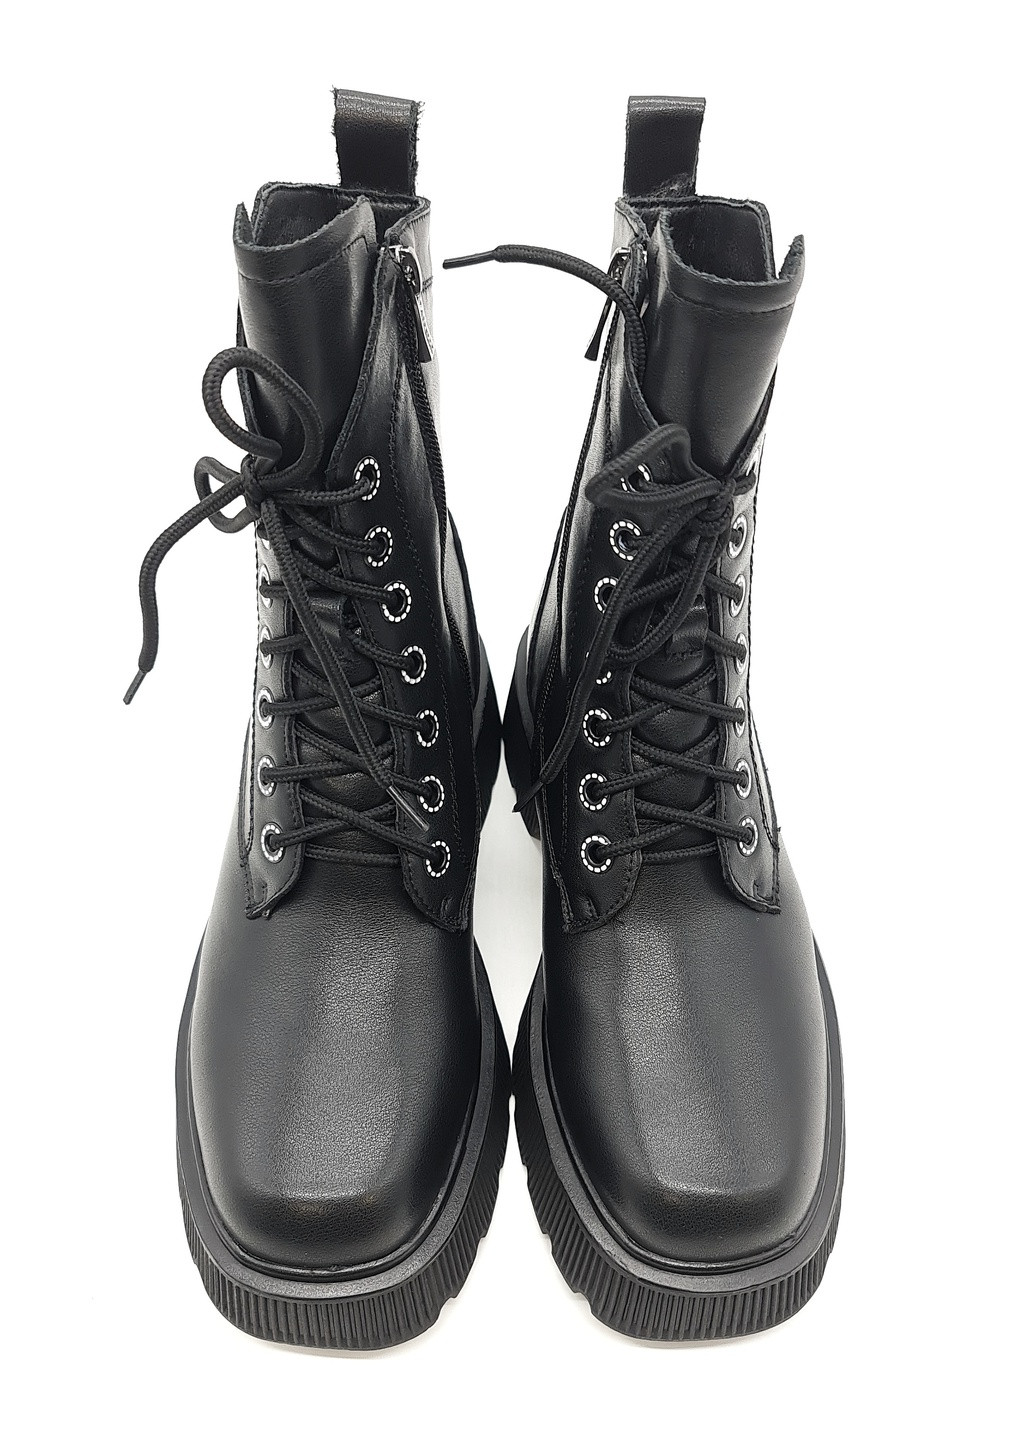 Осенние женские ботинки черные кожаные rf-12-2 24 см (р) Raffelli